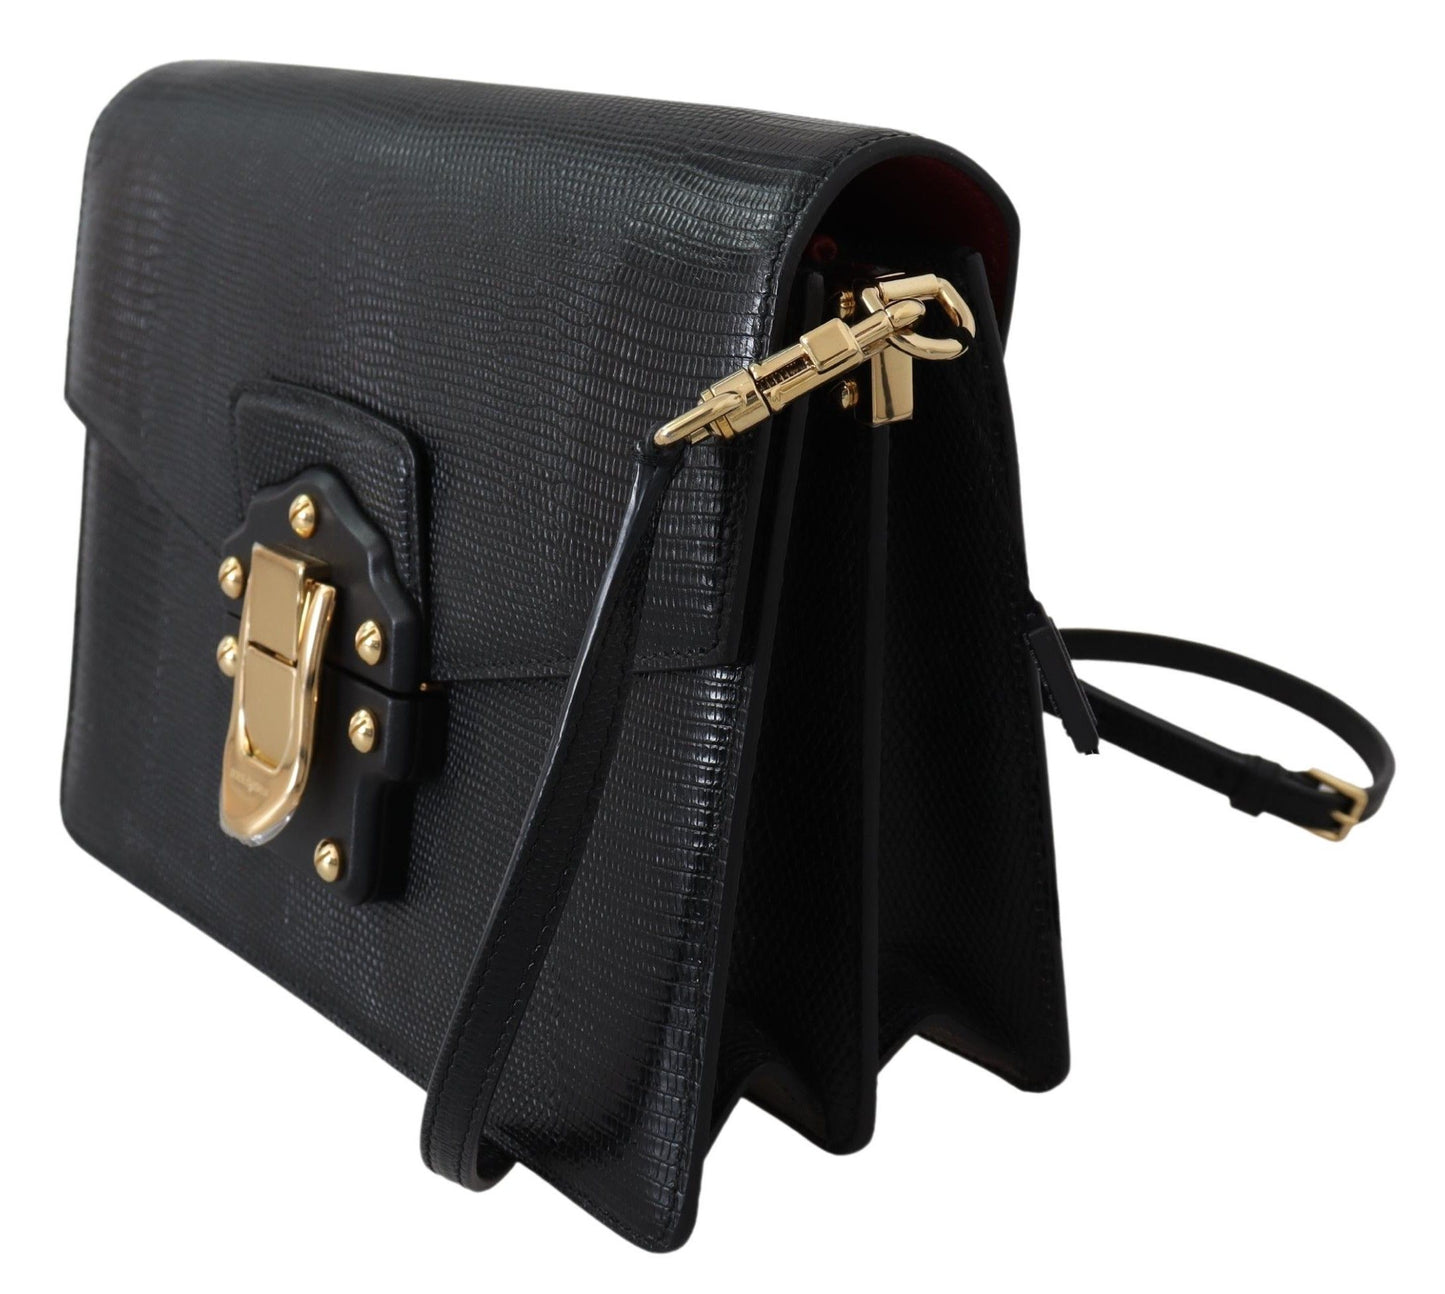 Elegant Black Leather Lucia Shoulder Bag